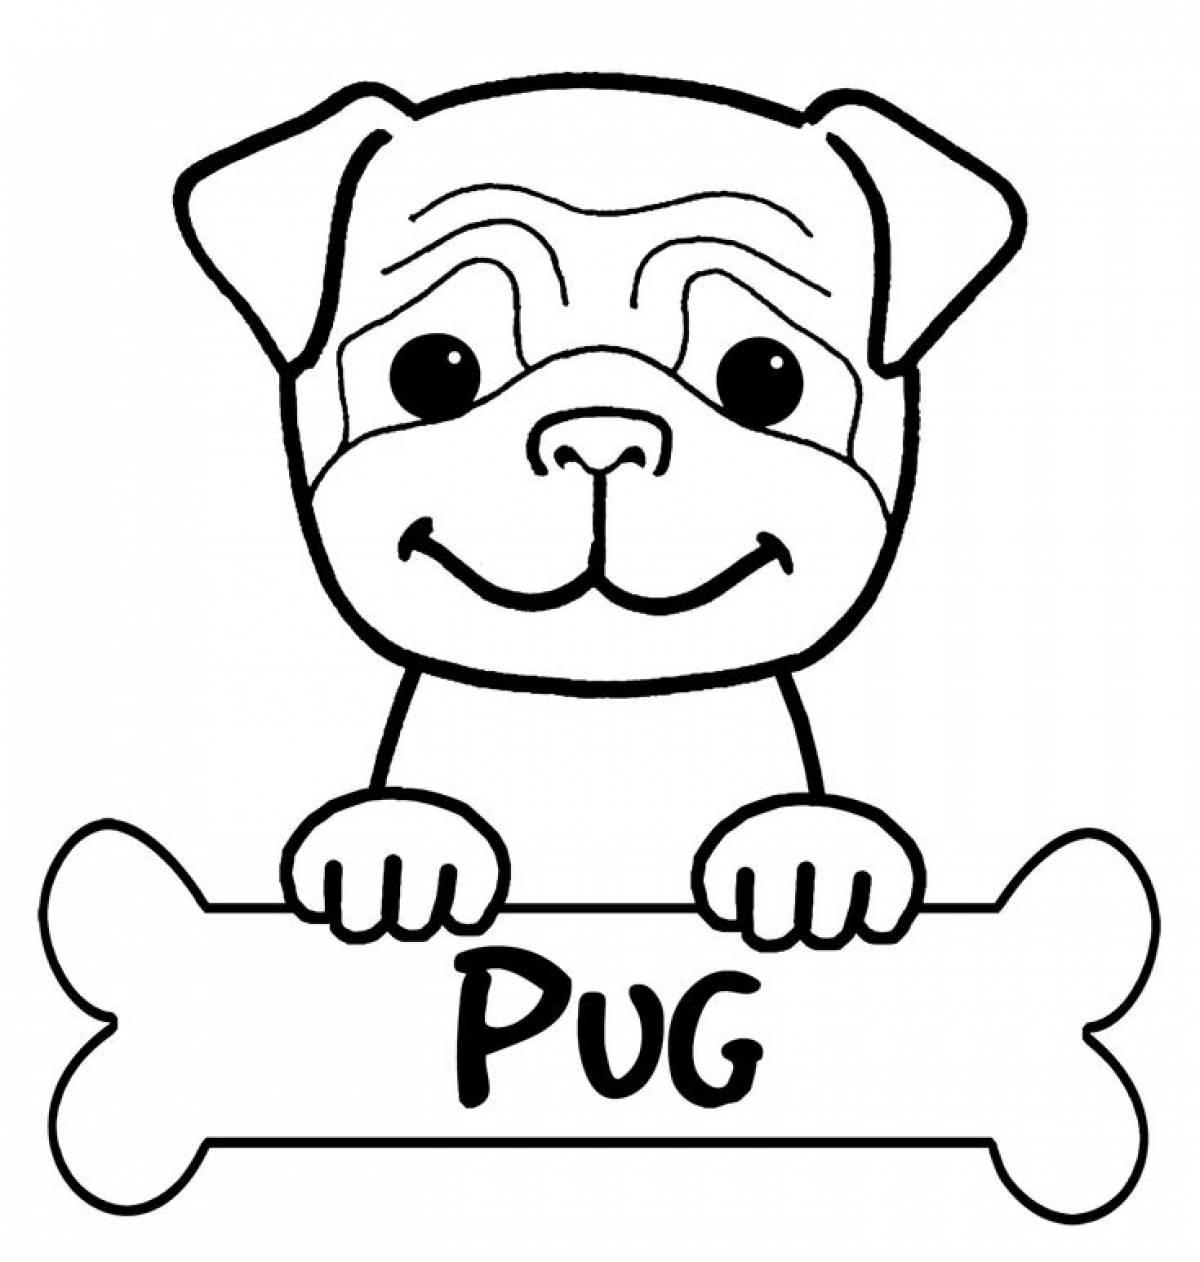 Pug with a bone